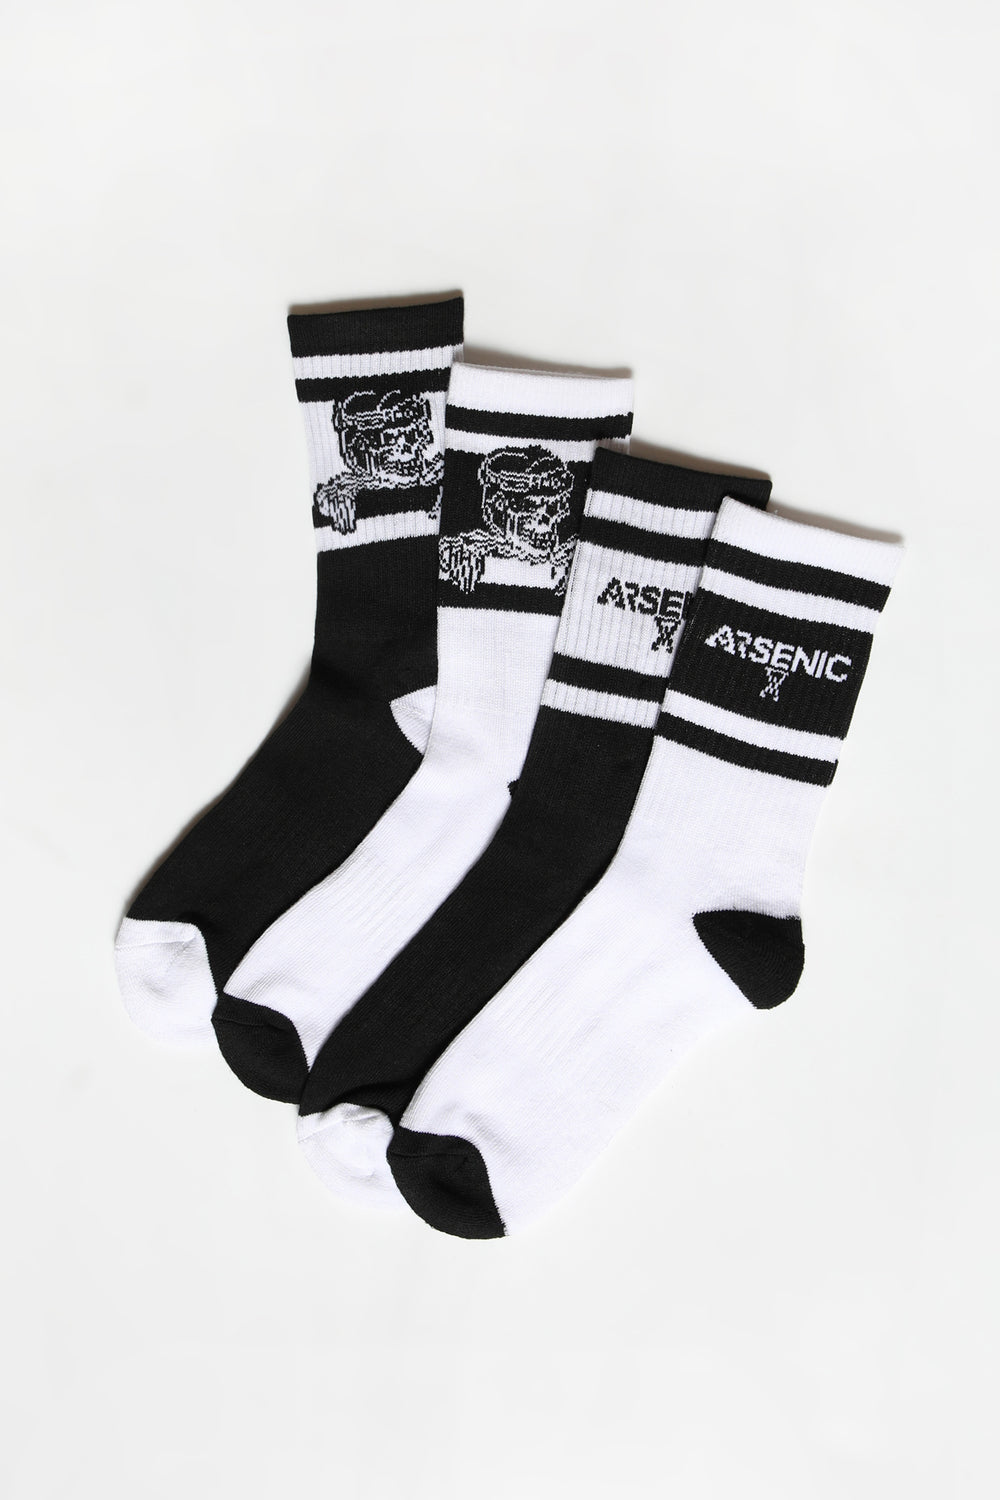 Arsenic Mens 4-Pack Athletic Crew Socks Arsenic Mens 4-Pack Athletic Crew Socks